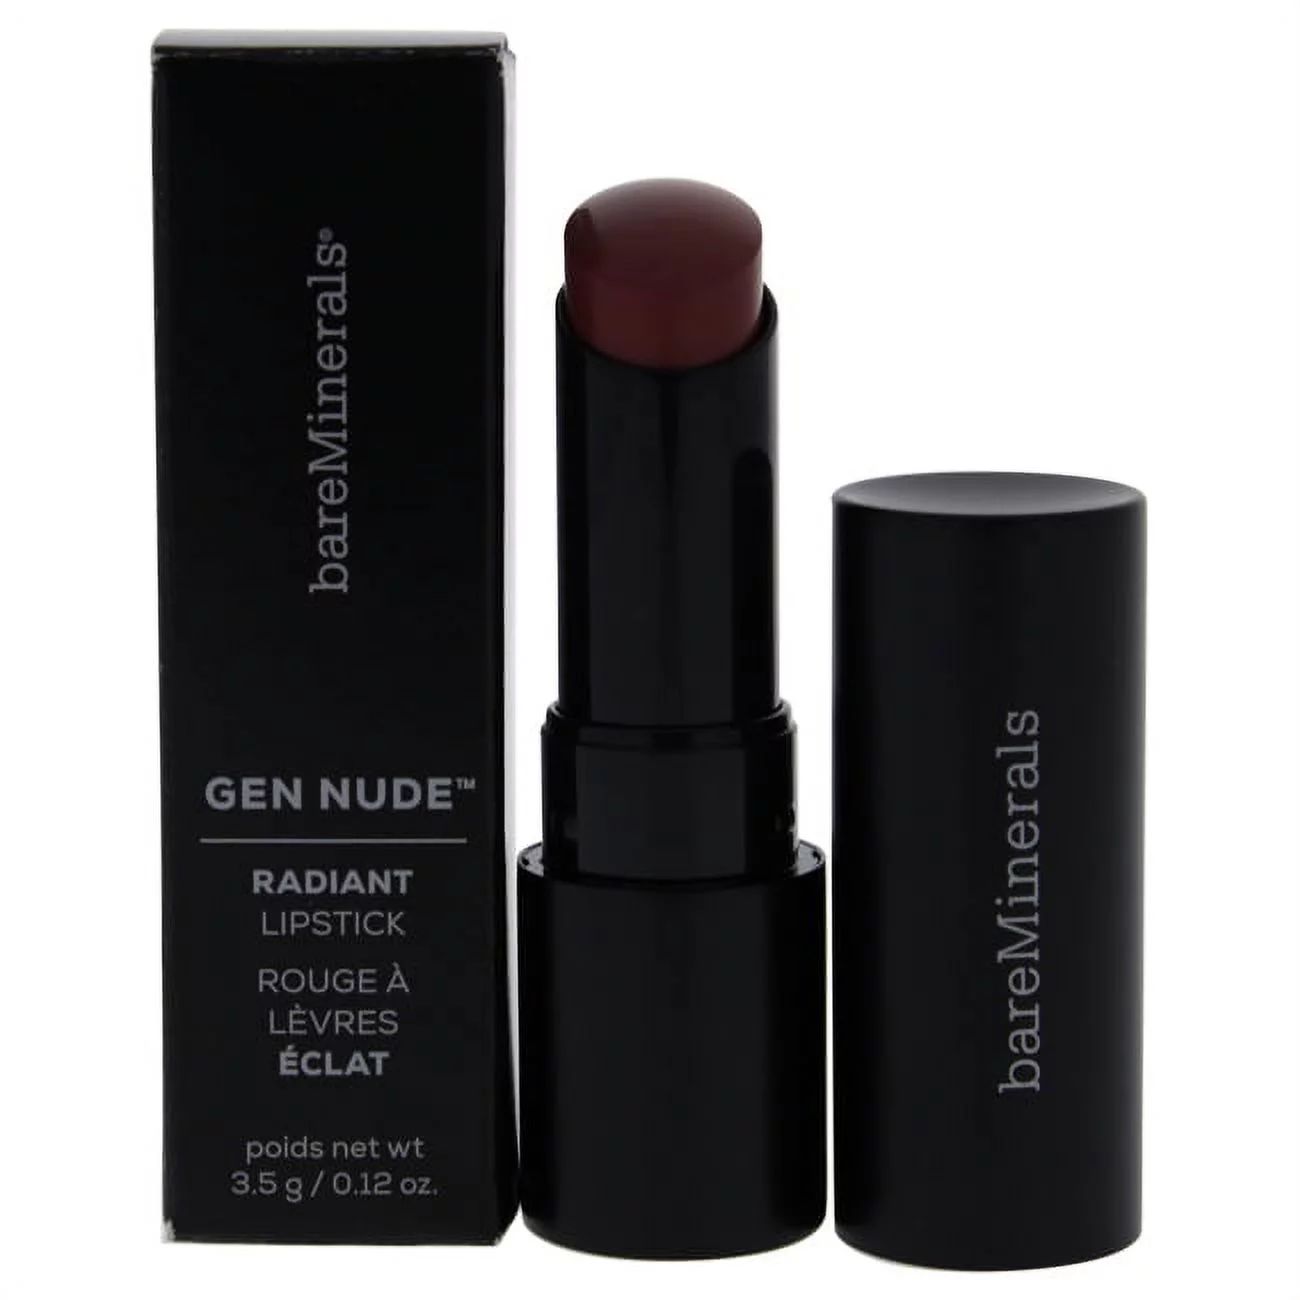 Gen Nude Radiant Lipstick - Mantra by bareMinerals for Women - 0.12 oz Lipstick | Walmart (US)